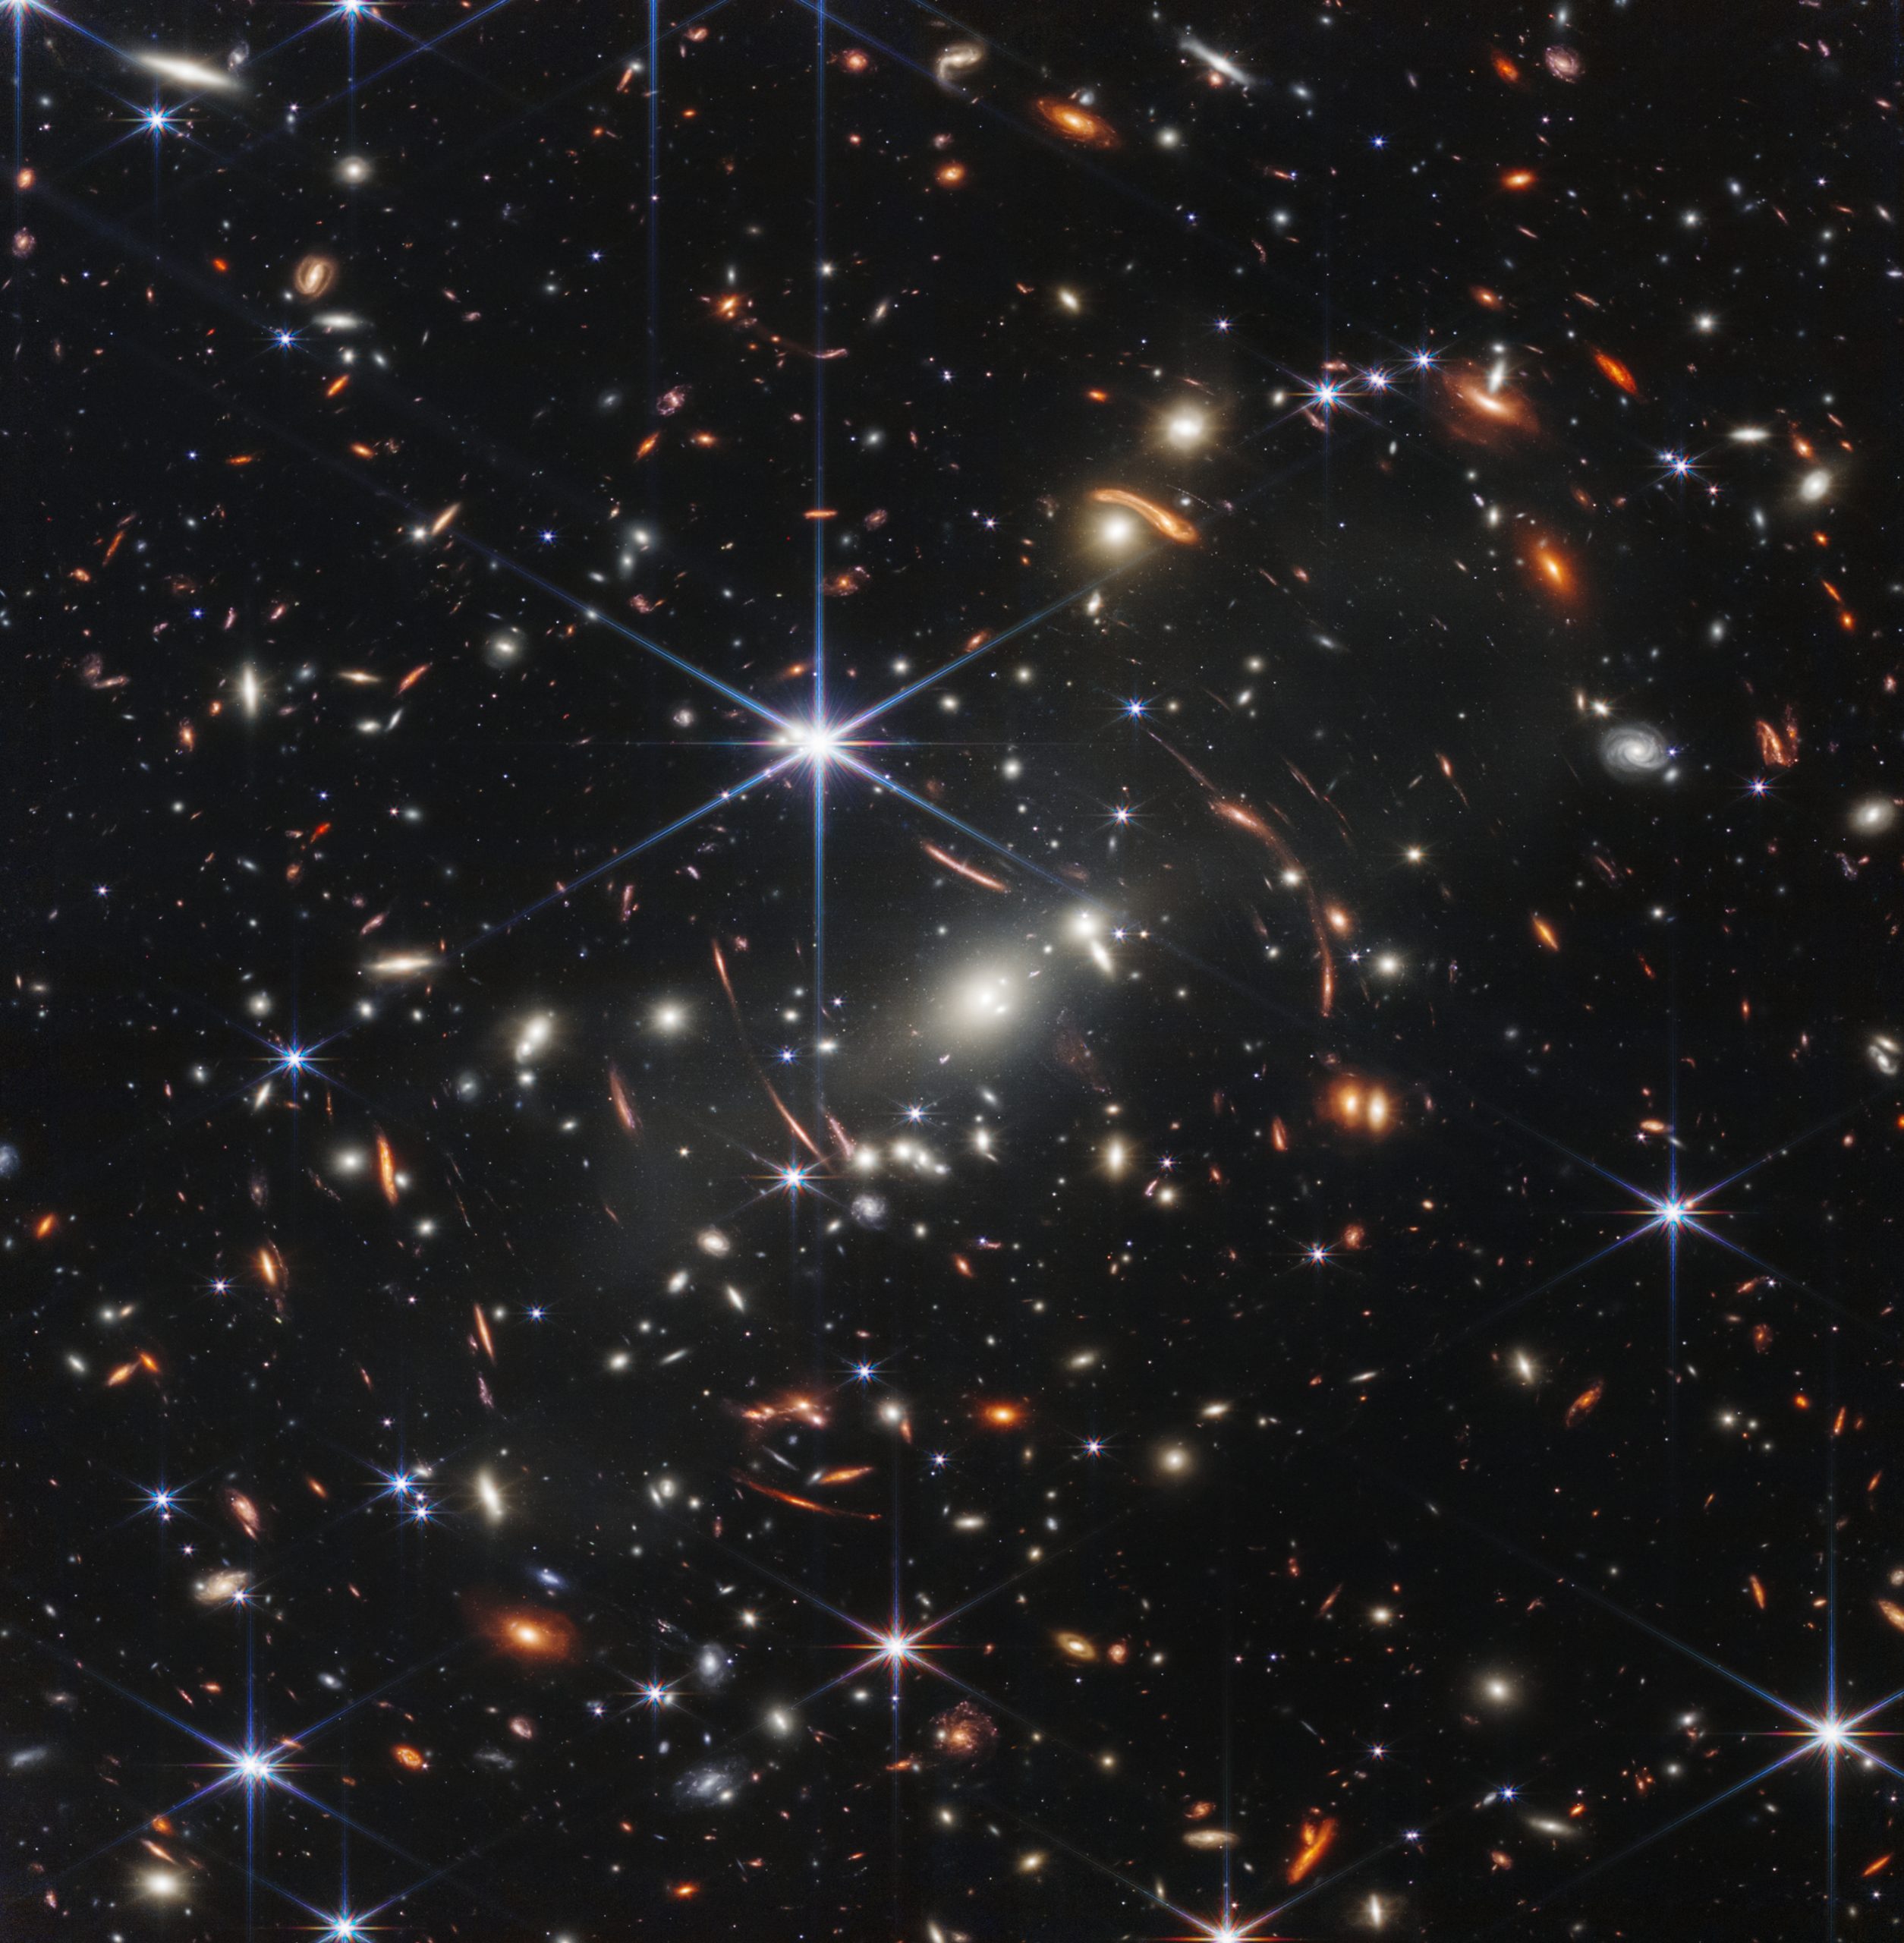 Первое изображение, сделанное JWST, показывает самое глубокое инфракрасное изображение космоса